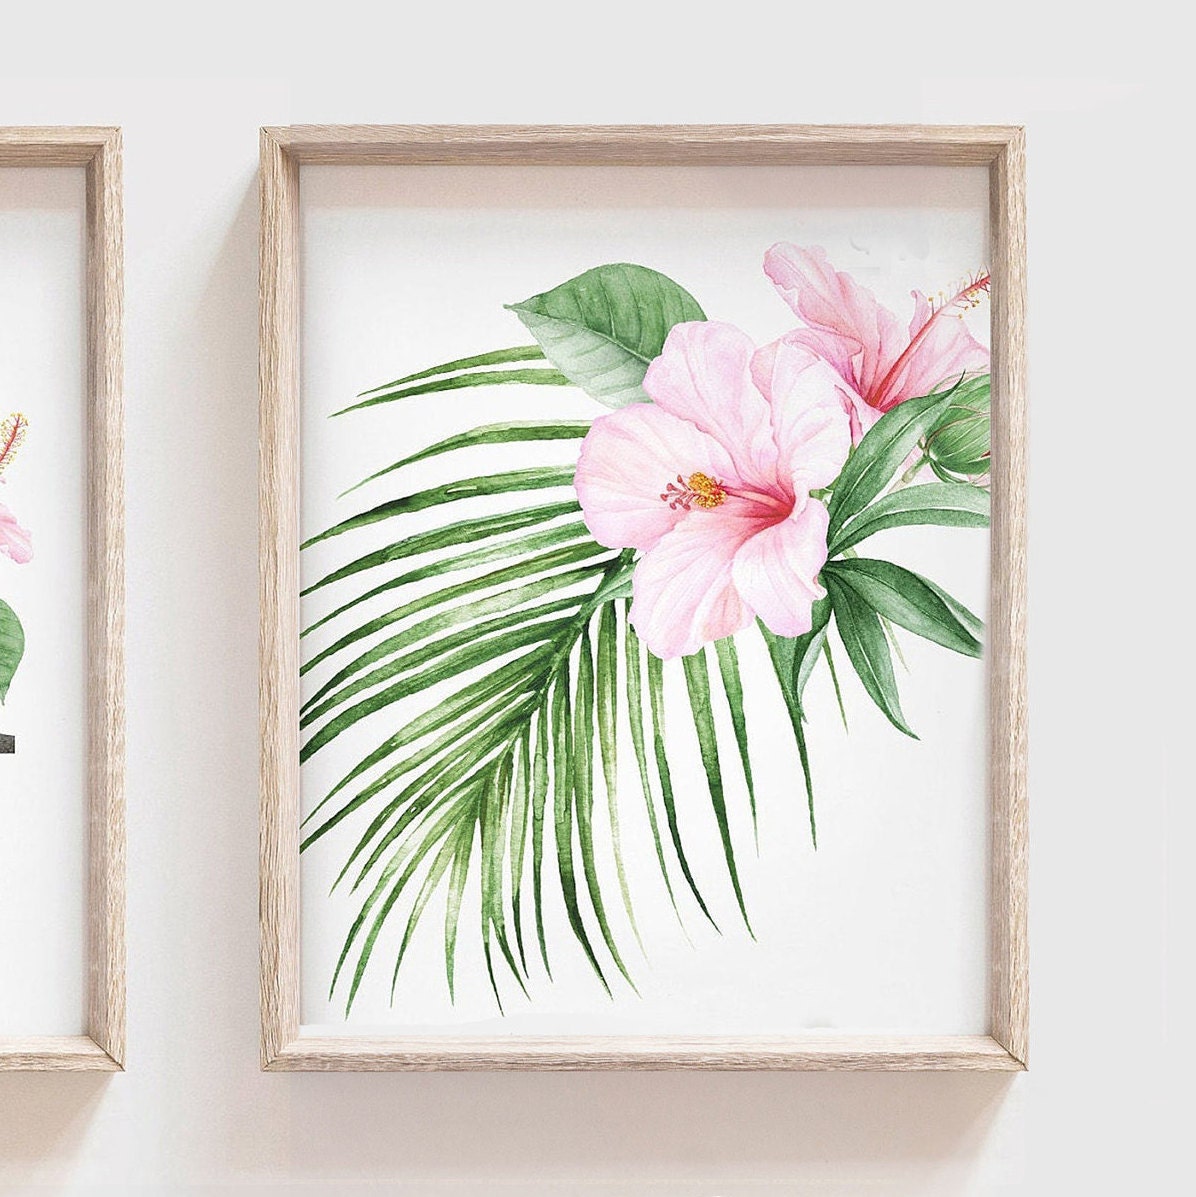 Girl nursery decor palm leaf tropical theme nursery art | Etsy